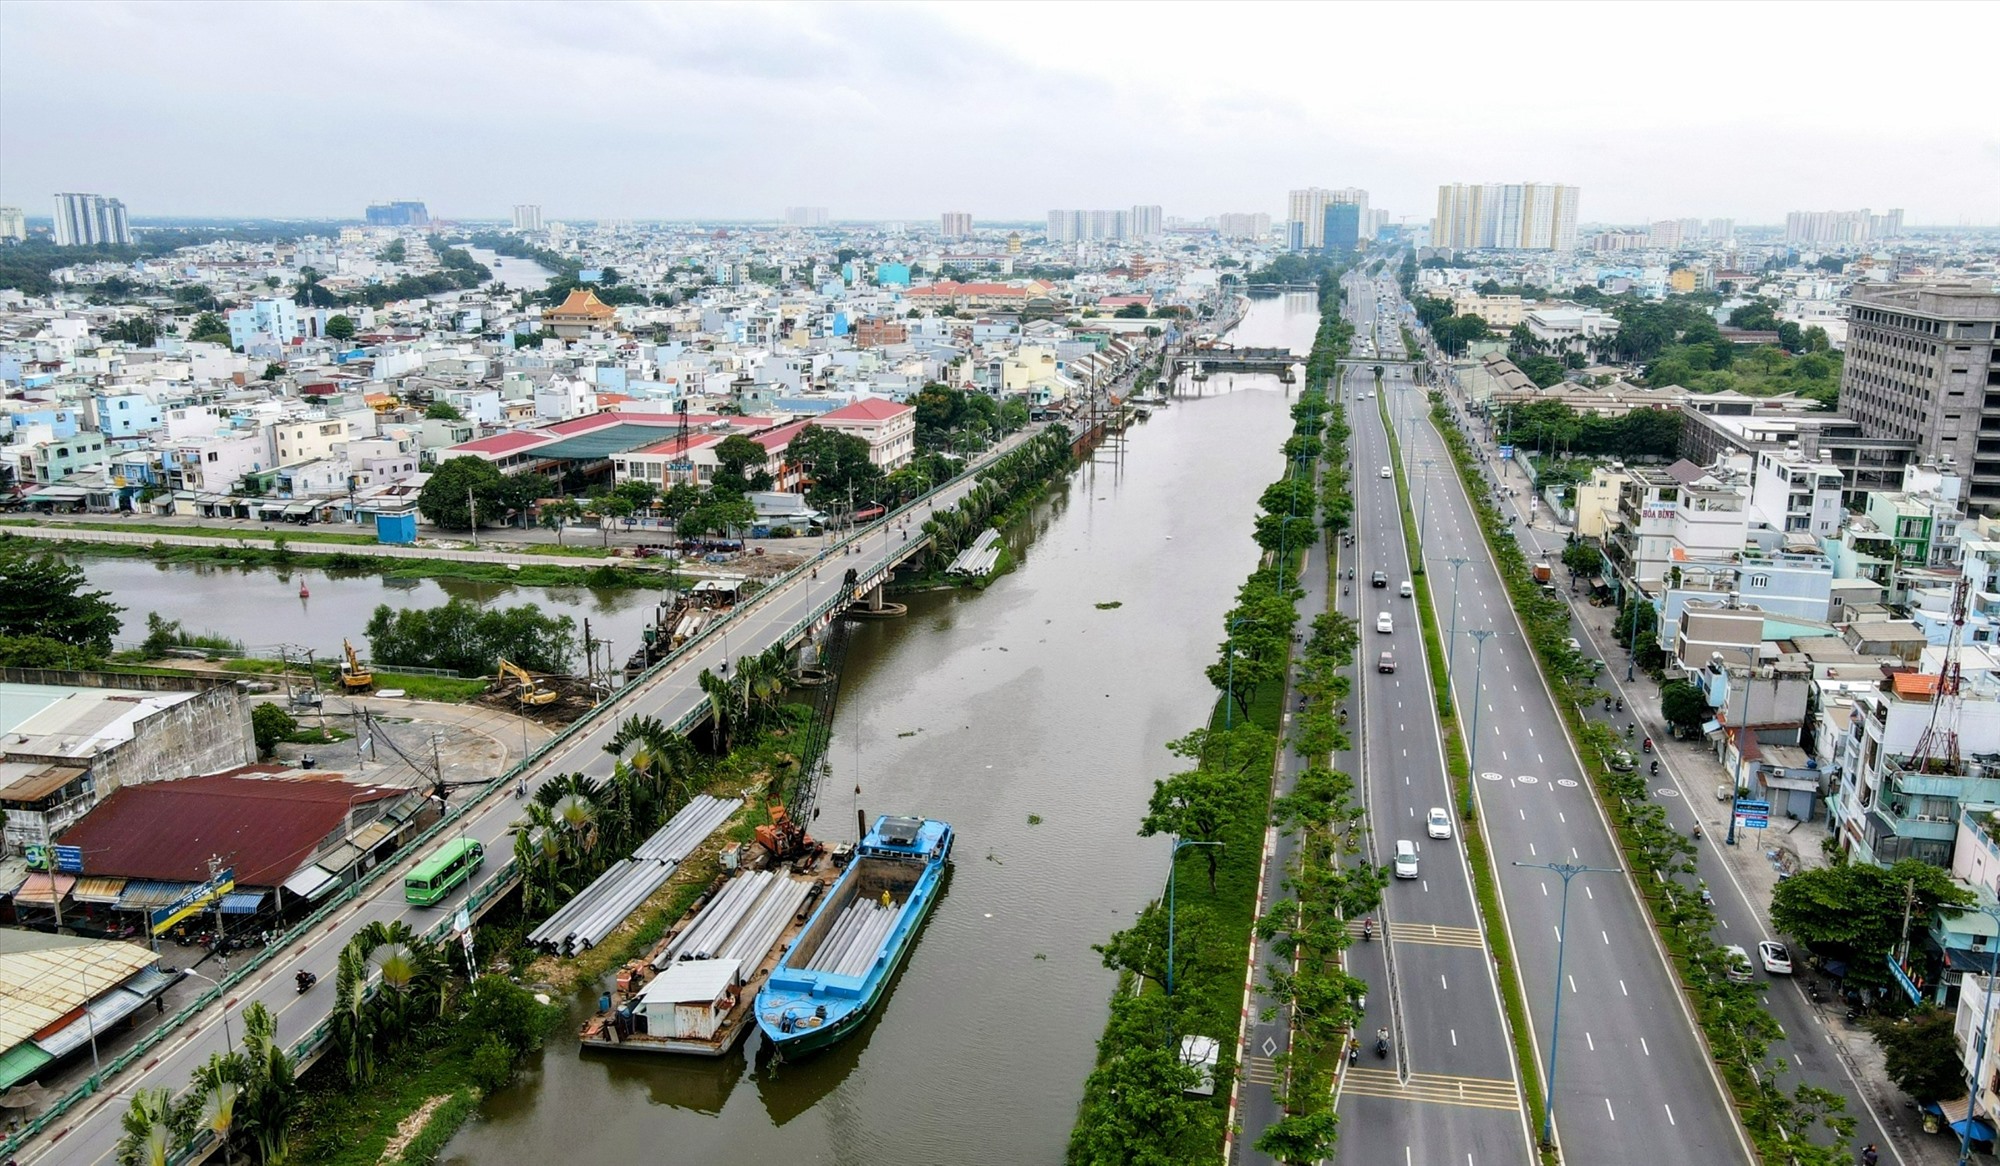 Cuối cùng là dự án xây dựng cầu đường Bình Tiên (đoạn từ đường Phạm Văn Chí đến đường Nguyễn Văn Linh) dài 3,2 km, rộng 30 – 40 m với tổng vốn hơn 6.200 tỉ đồng. Dự án này được đề xuất ngân sách tham gia với tỉ lệ 54% và doanh nghiệp 46%.